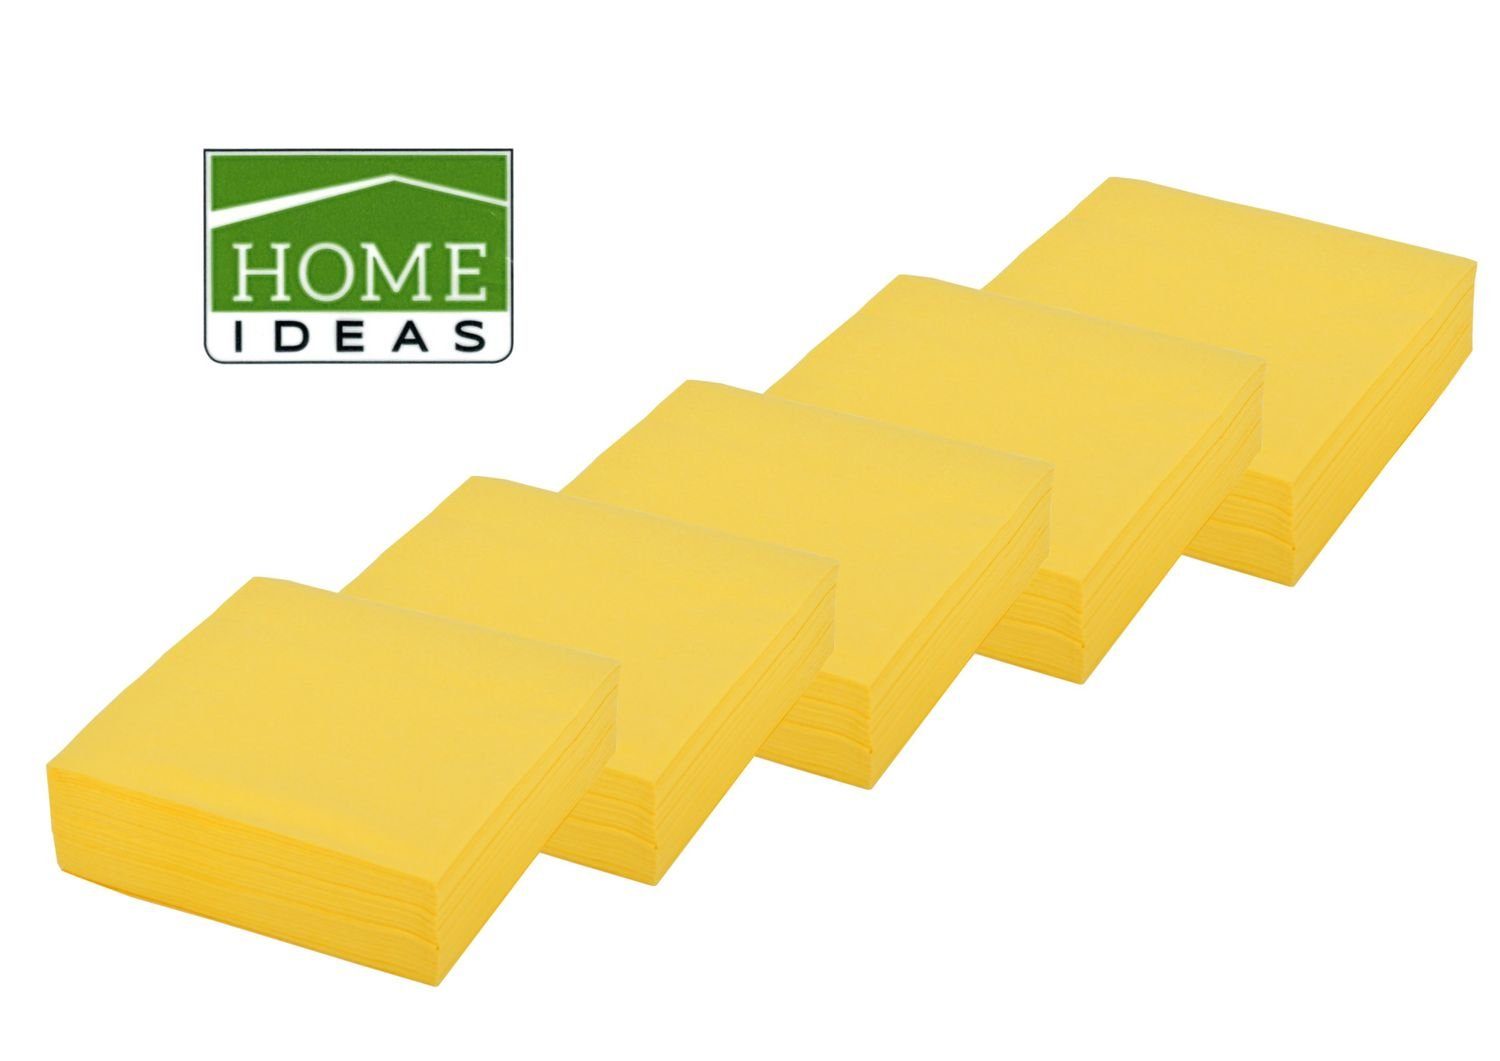 Home Ideas Papierserviette 250 Servietten gelb 33x33cm 3lagig 1/4 Falz Papierserviette Tischdeko